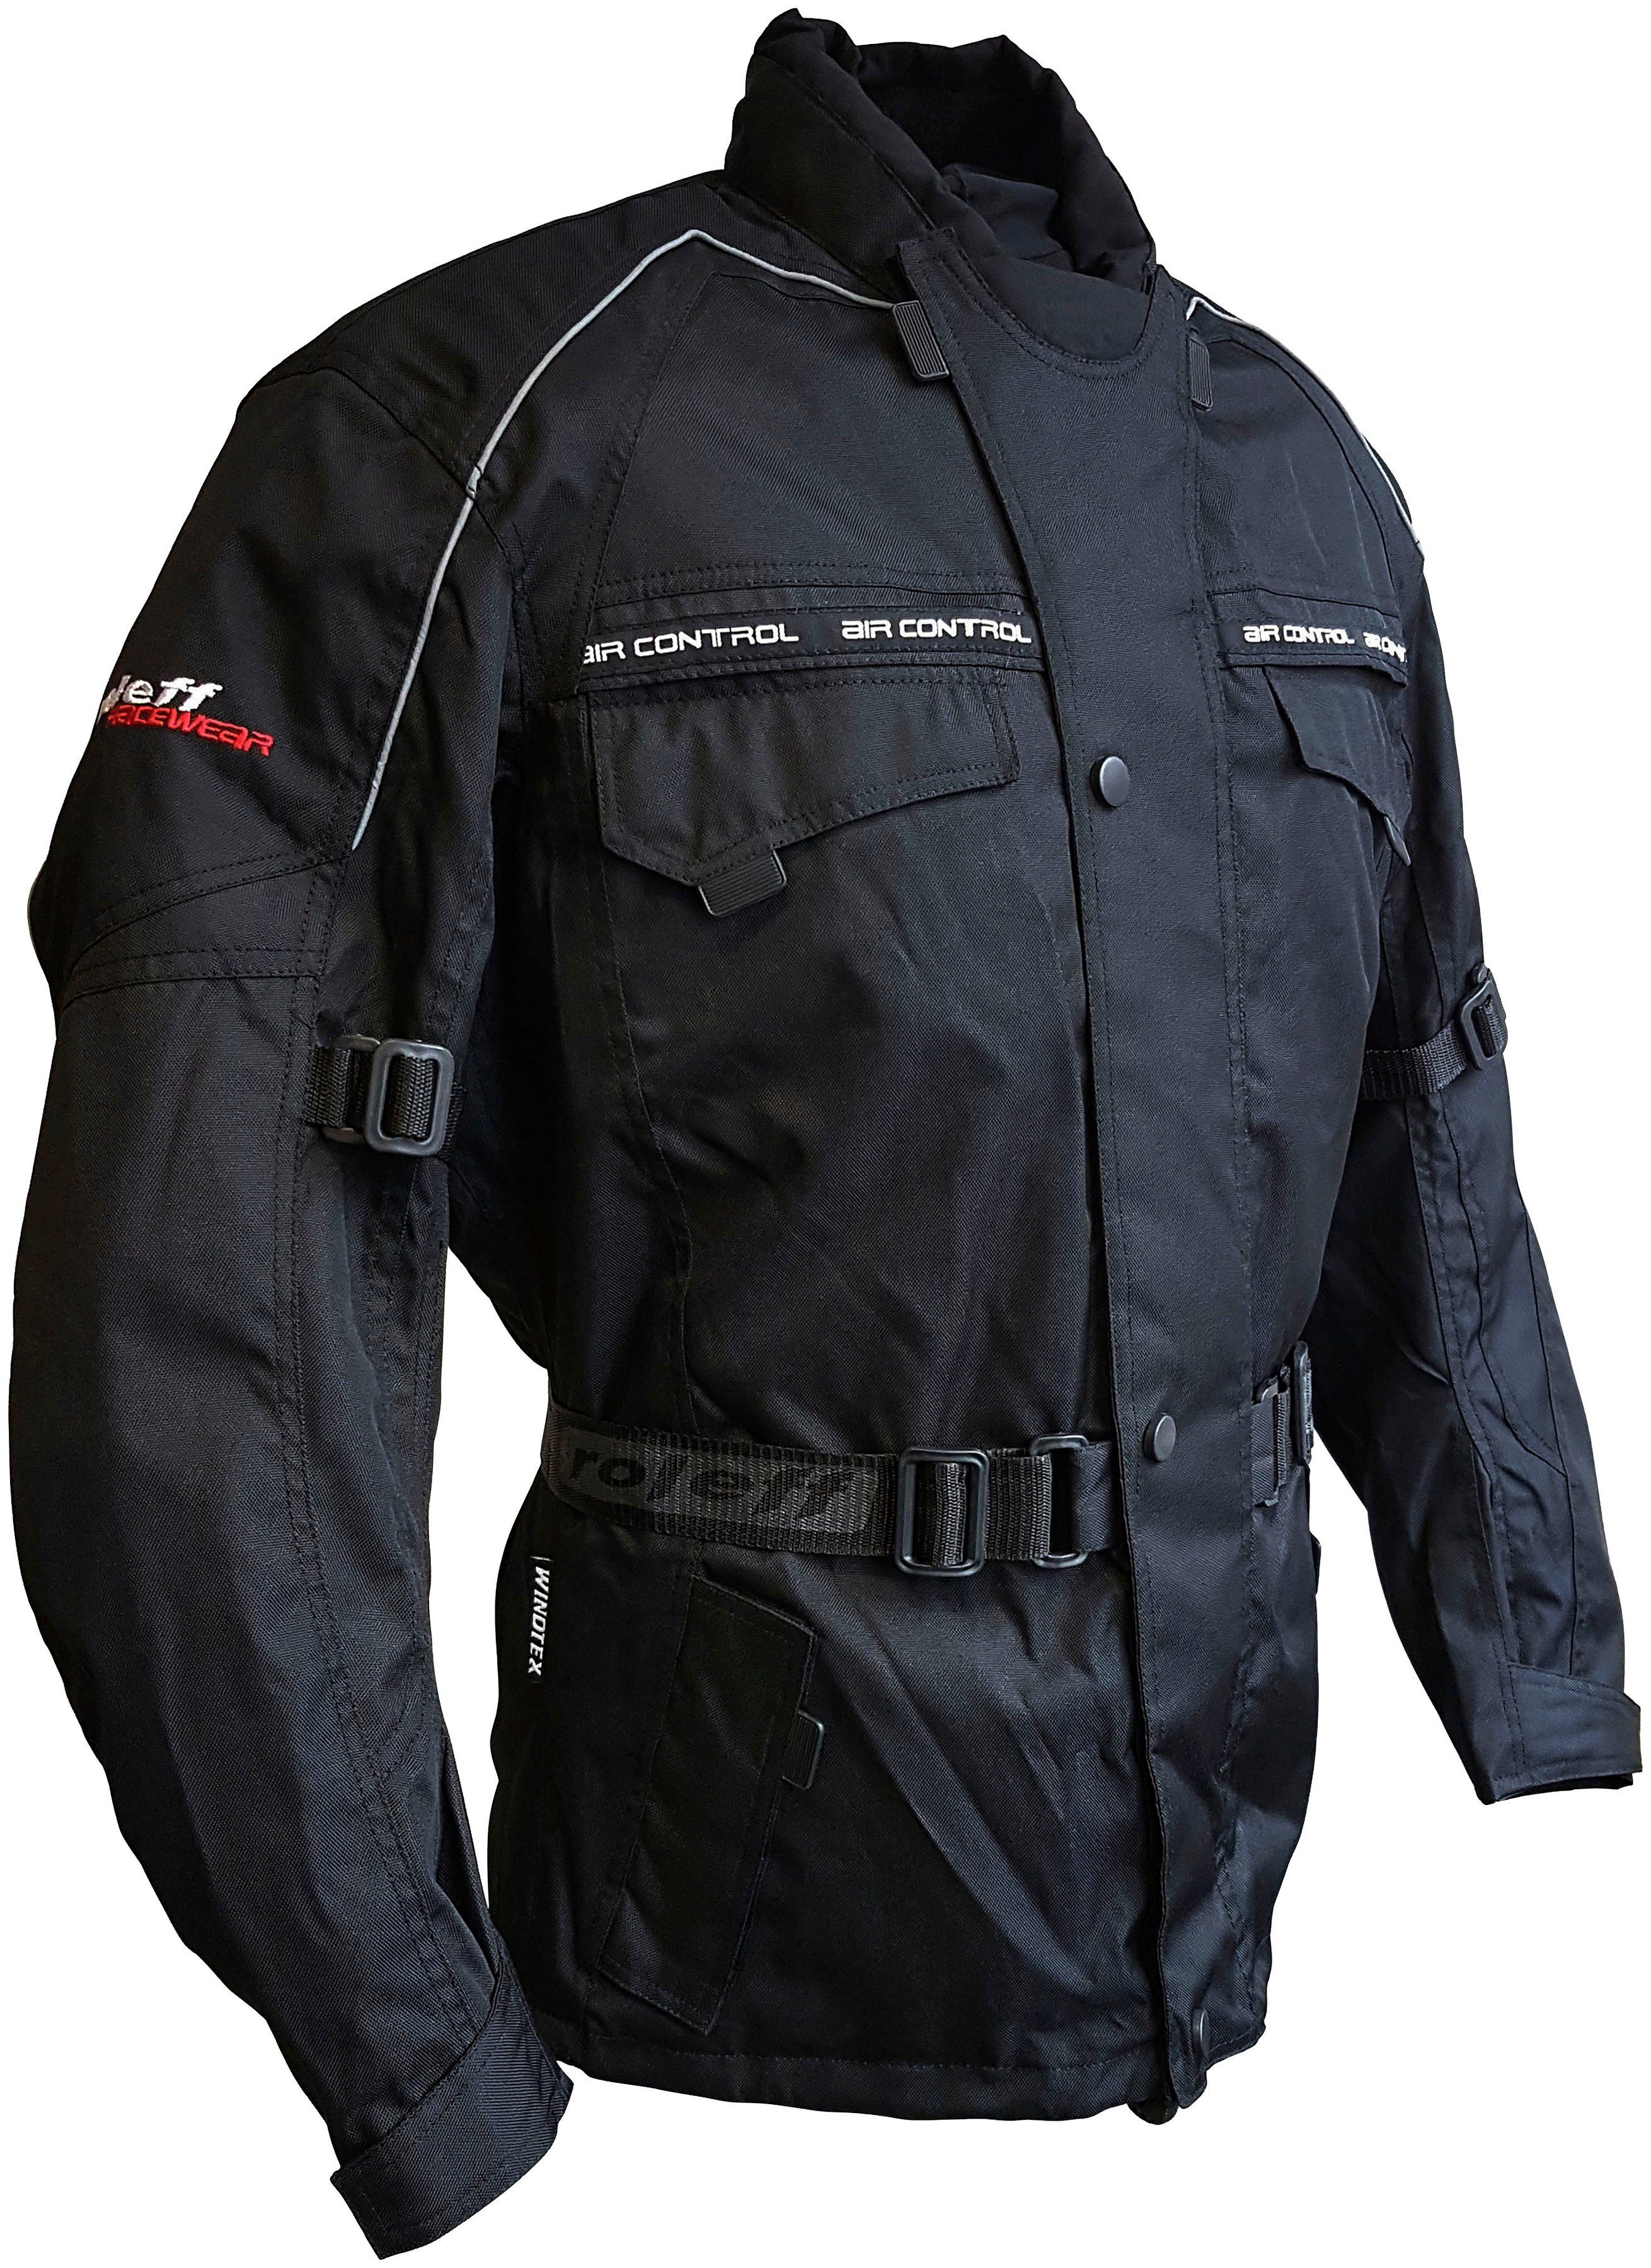 Protektoren, Taschen, Belüftungslöcher Motorradjacke mit 3 schwarz 4 roleff Reno